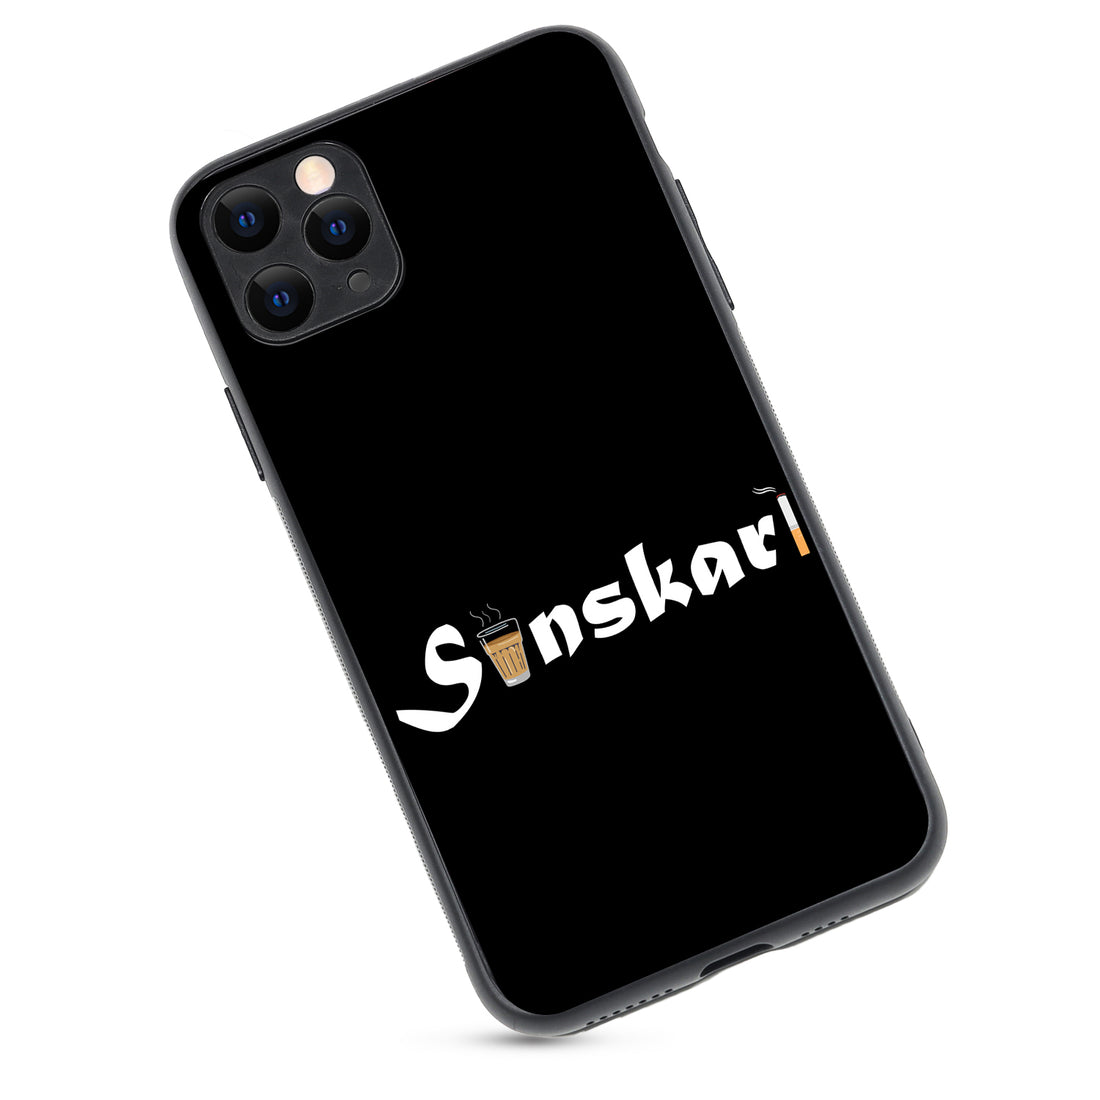 Sanskari Uniword iPhone 11 Pro Max Case